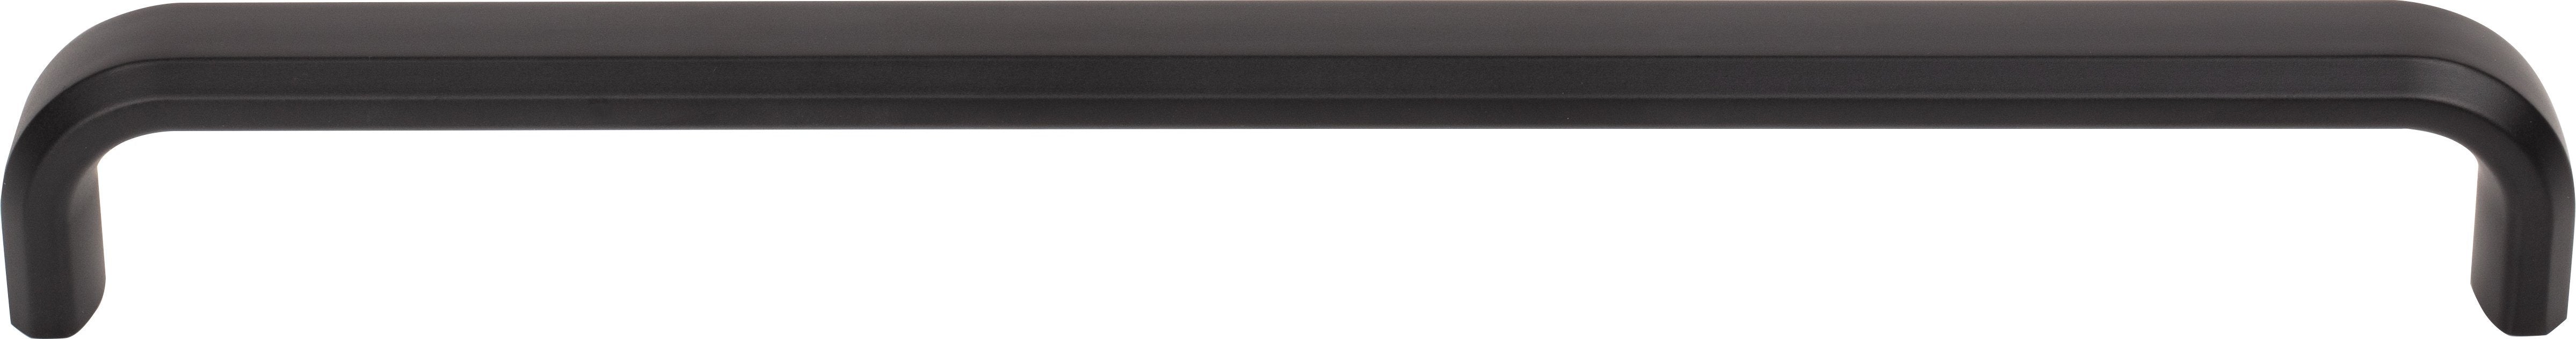 Top Knobs TK3015BLK 8-13/16in (224mm) Telfair Pull Flat Black - KnobDepot